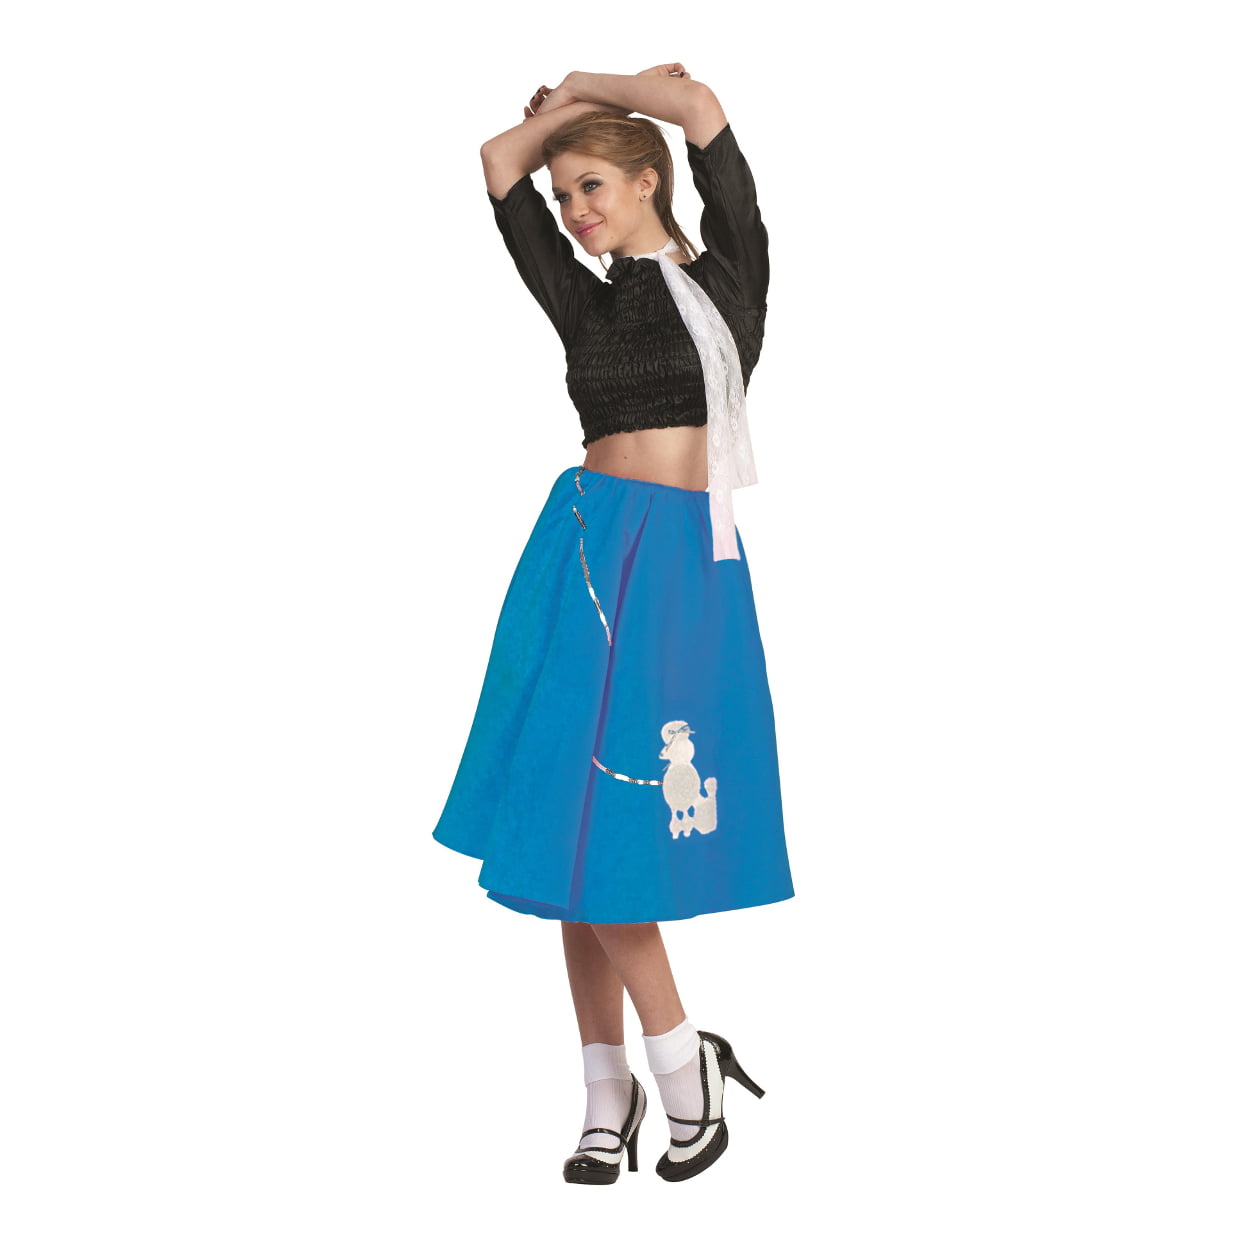 1950s Teal & Yellow Plaid Skirt 50s Skirt 1950s Plaid Skirt 1950s Yellow Skirt Size Small 1950s Cotton Skirt 1950s Teal Skirt